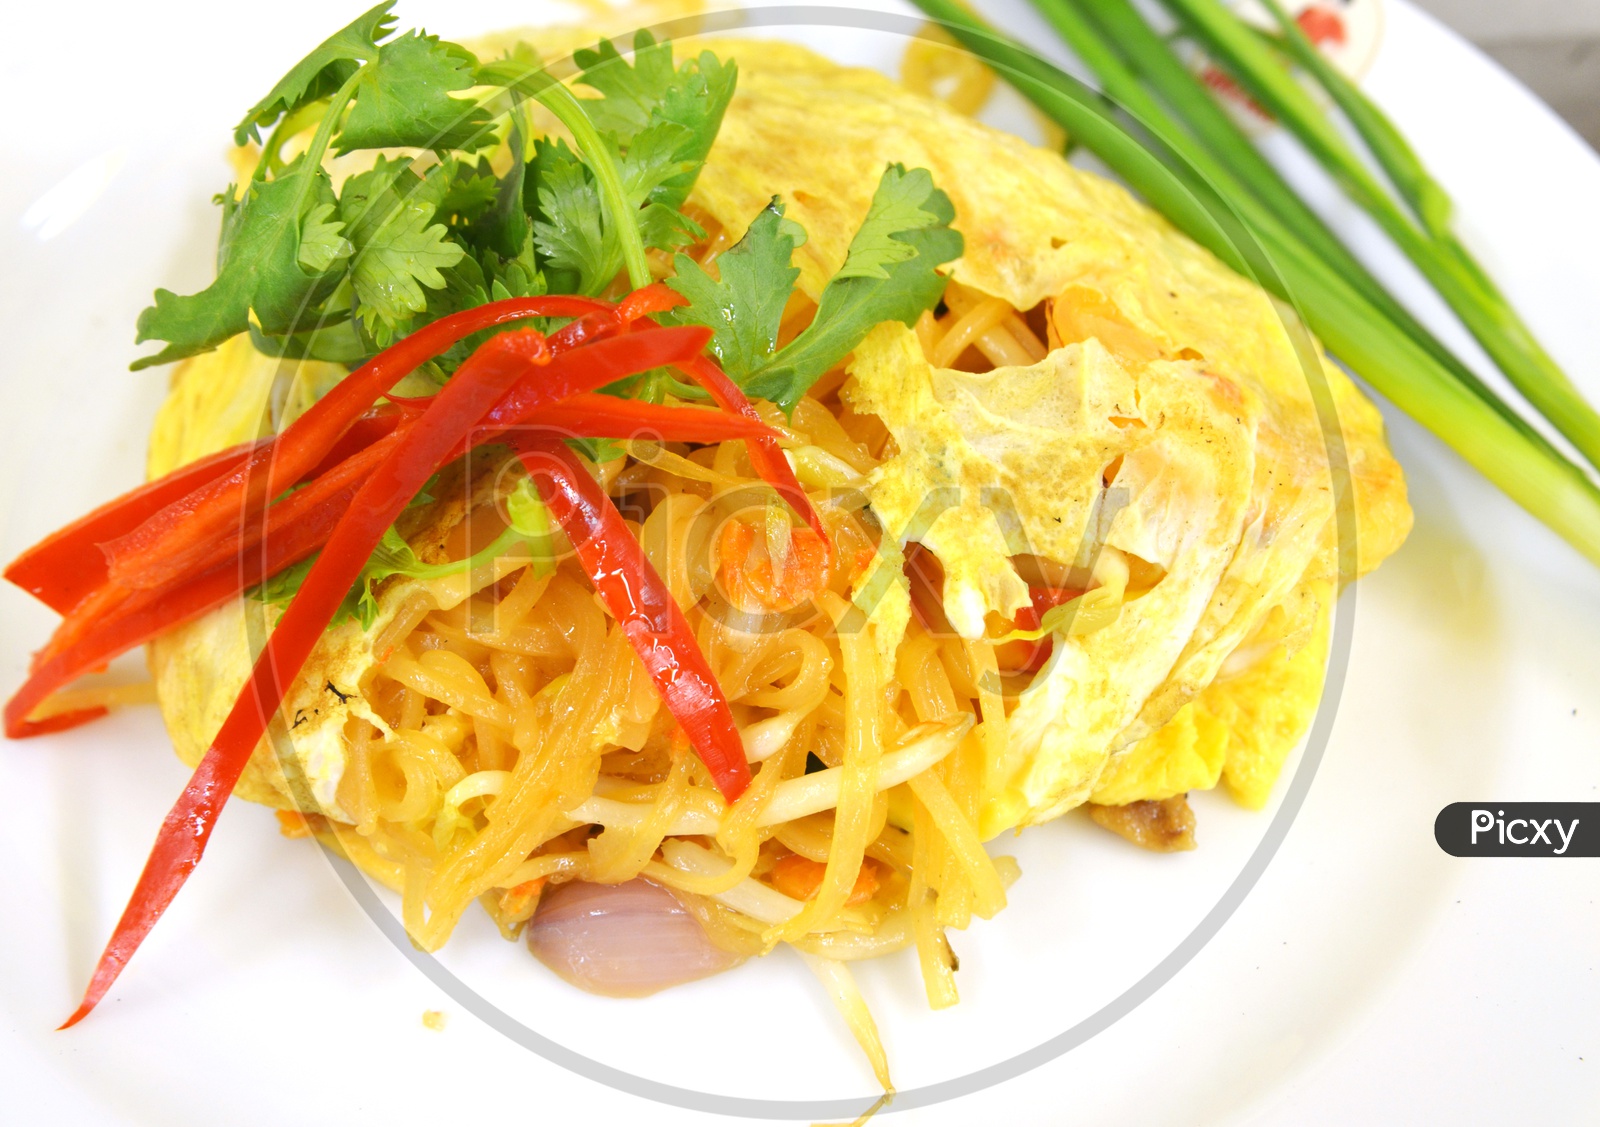 Stir fry noodles with shrimp garnished with coriander leaves